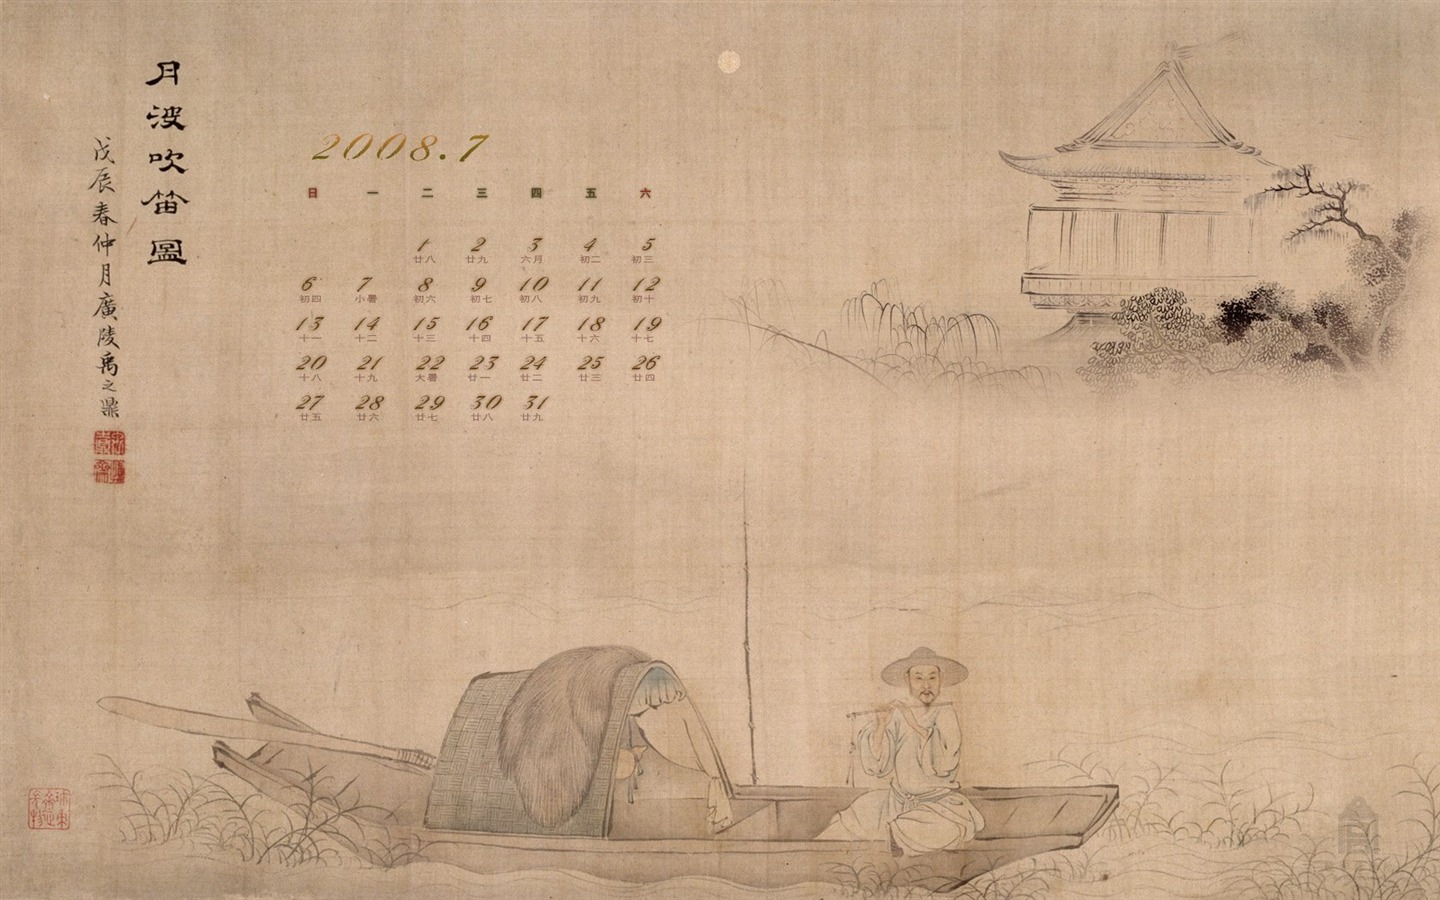 北京故宫博物院 文物展壁纸(二)6 - 1440x900